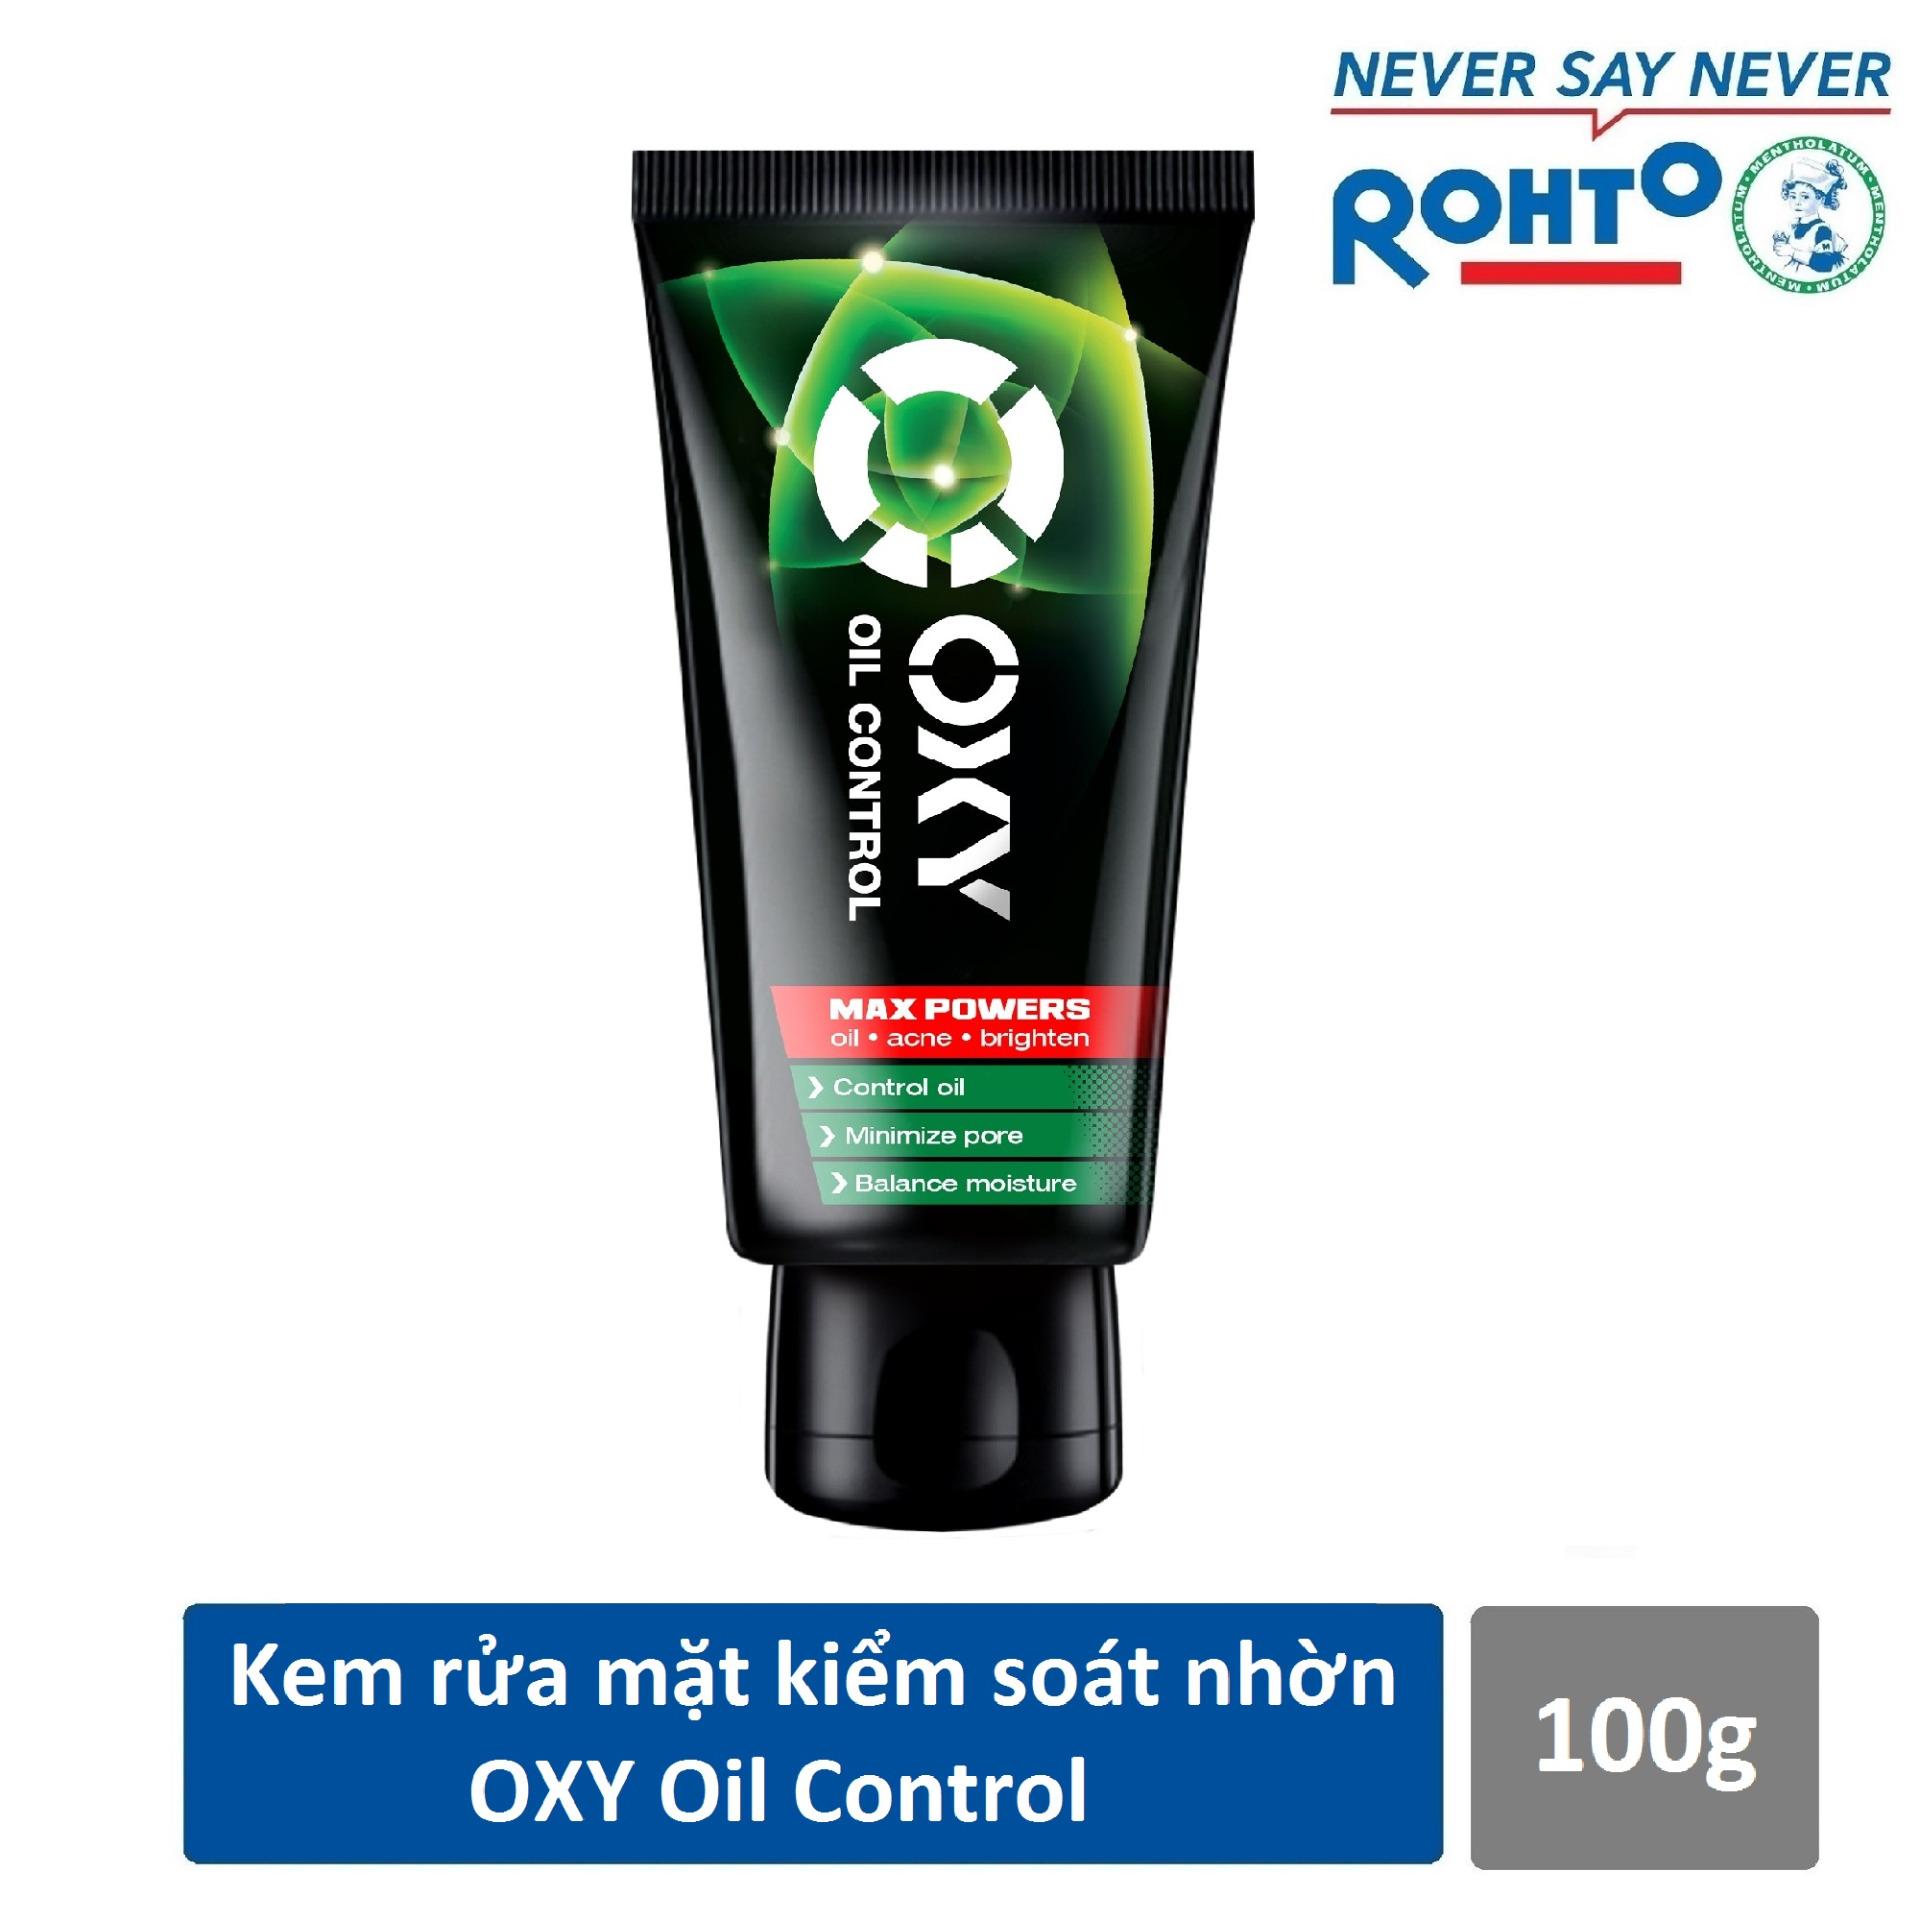 Kem rửa mặt kiểm soát nhờn và ngừa mụn cho nam Oxy Oil Control 100g